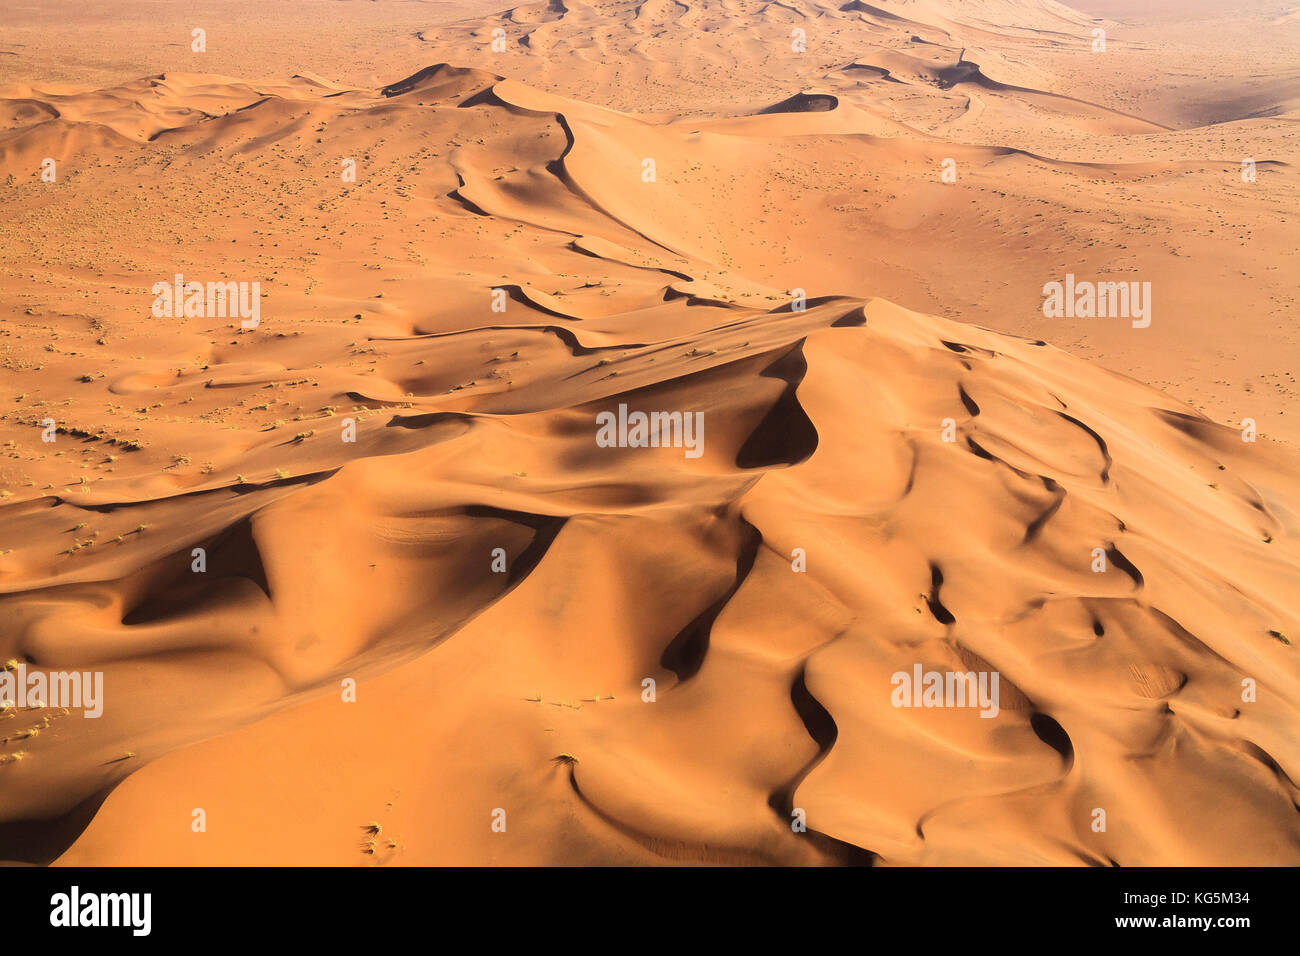 Vista aérea de las dunas modeladas por el viento del desierto de Namib namibia África meridional Foto de stock